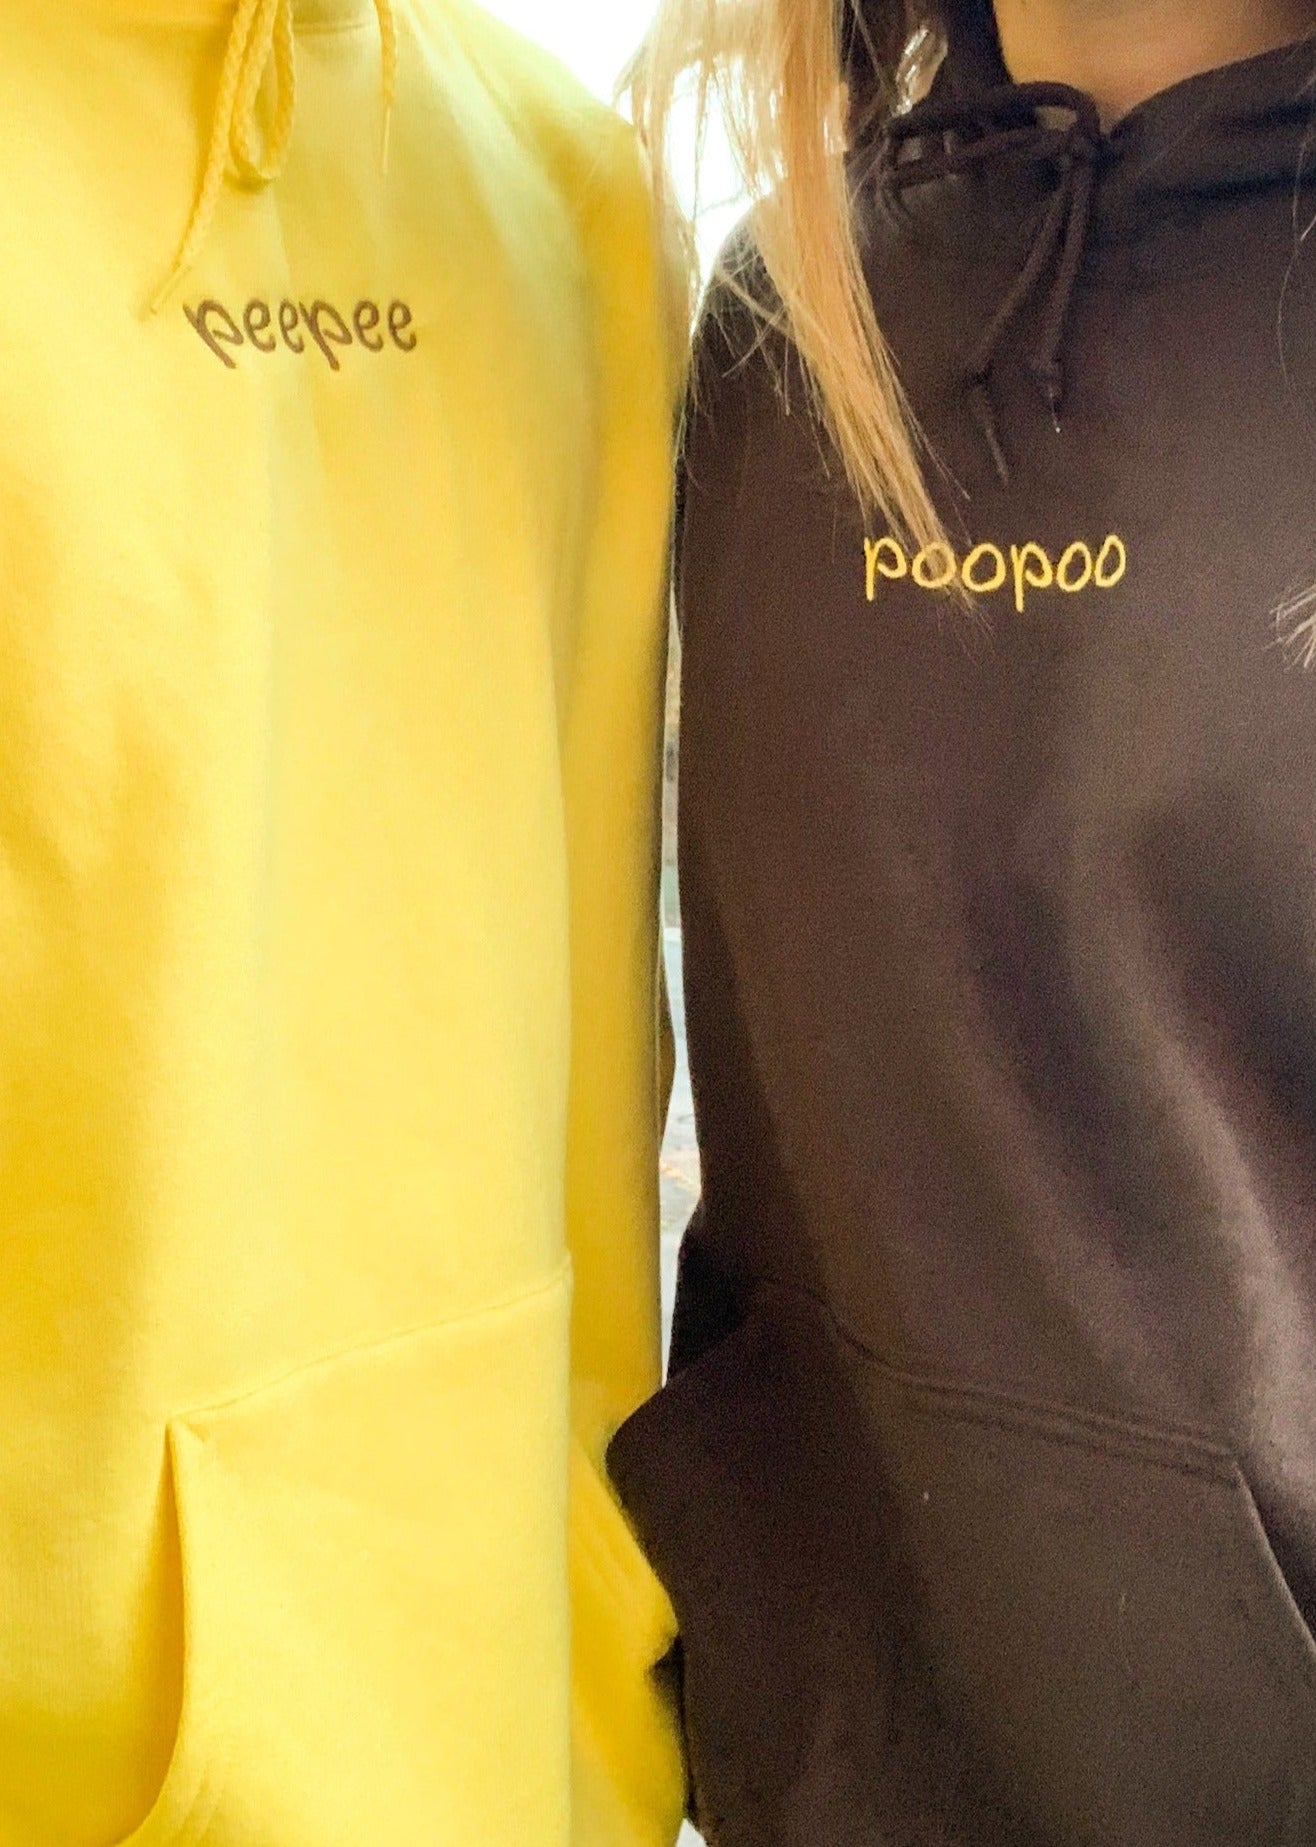 Peepeepoopoo Matching Embroidered Set